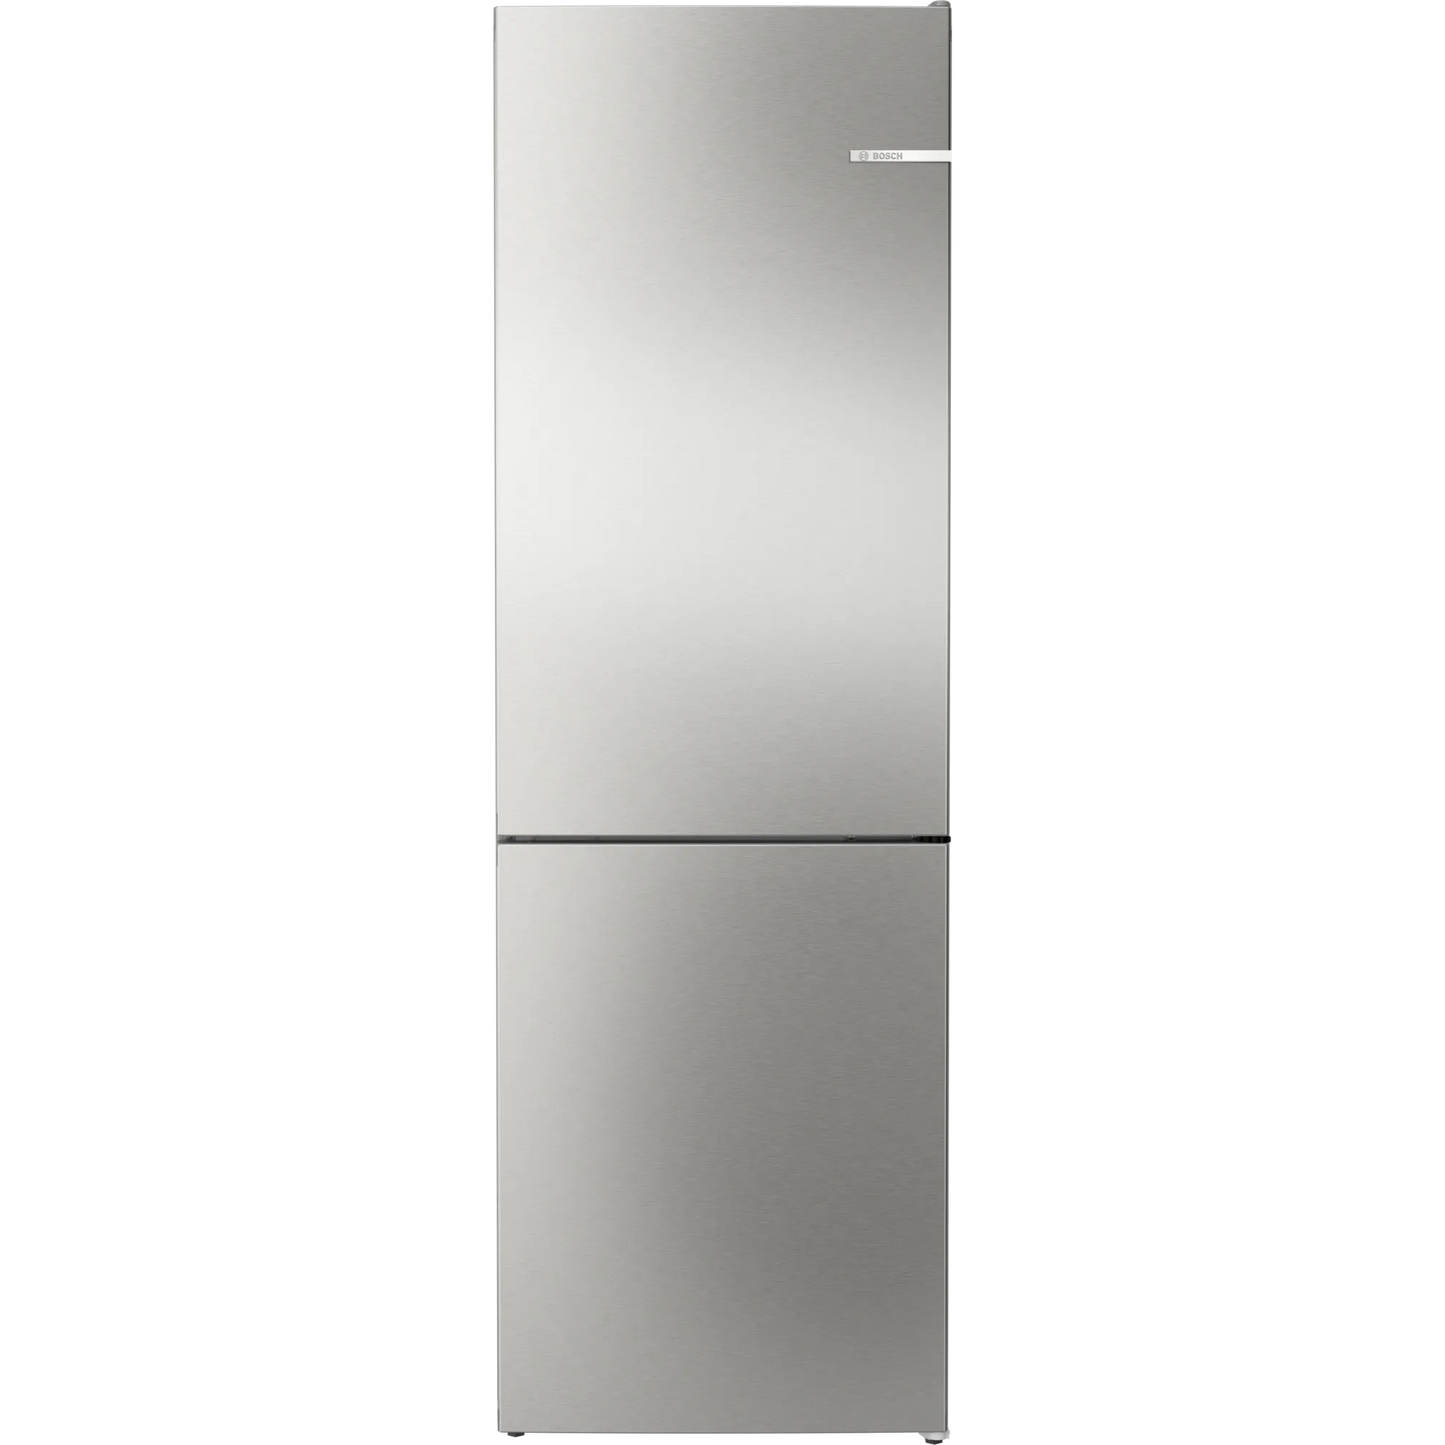 BOSCH EXCLUSIV Serie 4, Freistehende Kühl-Gefrier-Kombination mit Gefrierbereich unten, 186 x 60 cm, Edelstahl (mit Antifingerprint)